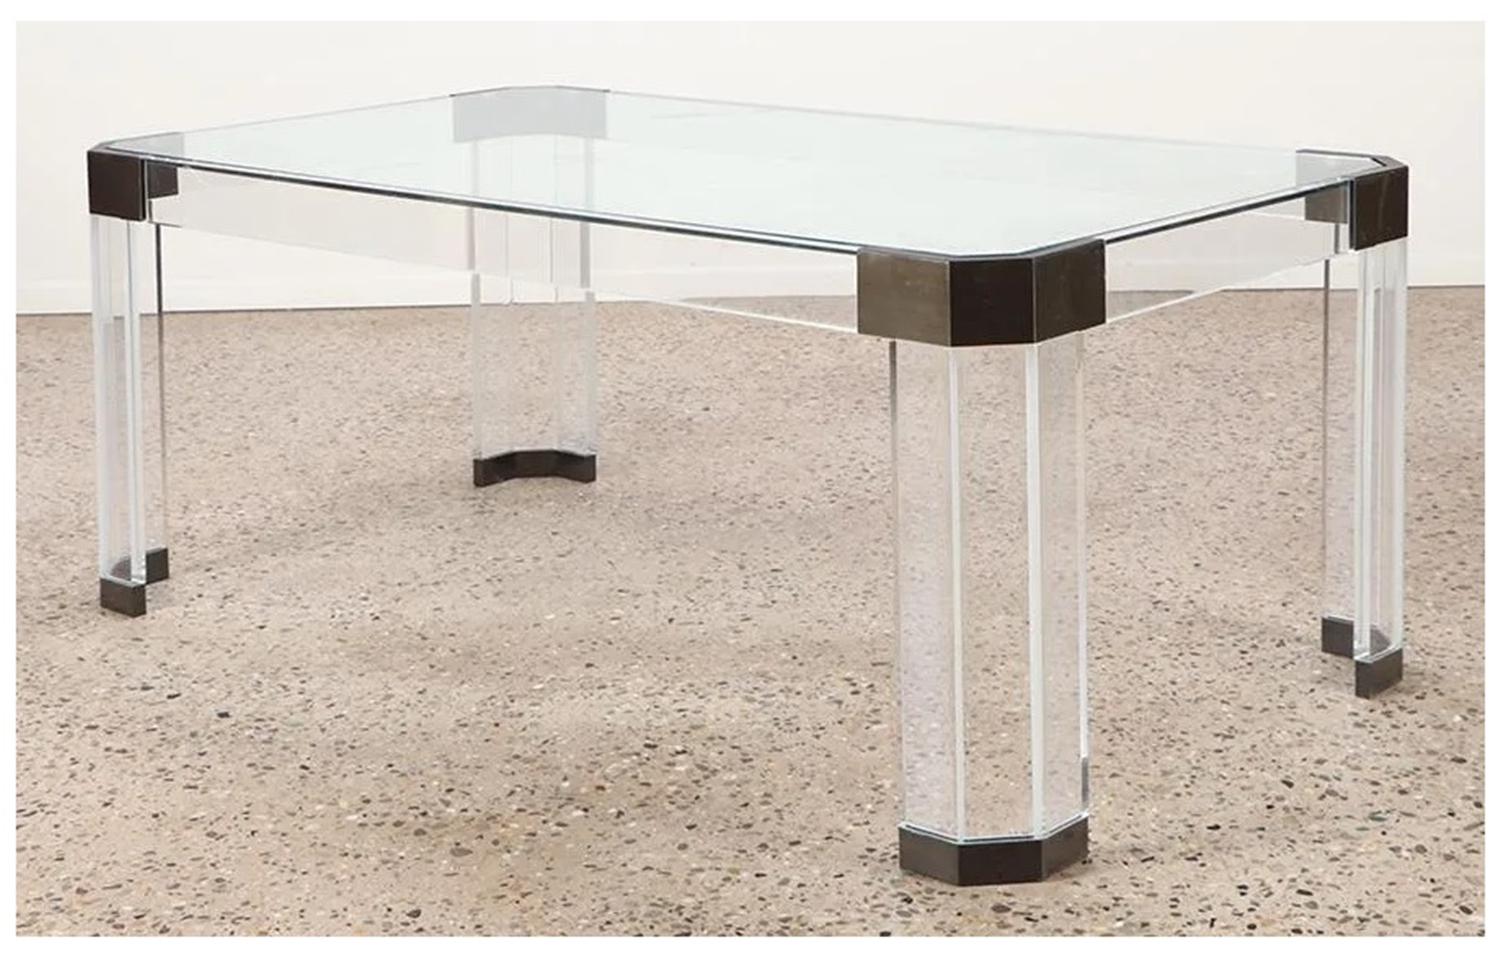 Voici la table de salle à manger en lucite, verre et laiton de Charles Hollis Jones, un meuble étonnant provenant des États-Unis dans les années 1970. Cette table rectangulaire est dotée d'un plateau en verre transparent qui met en valeur les